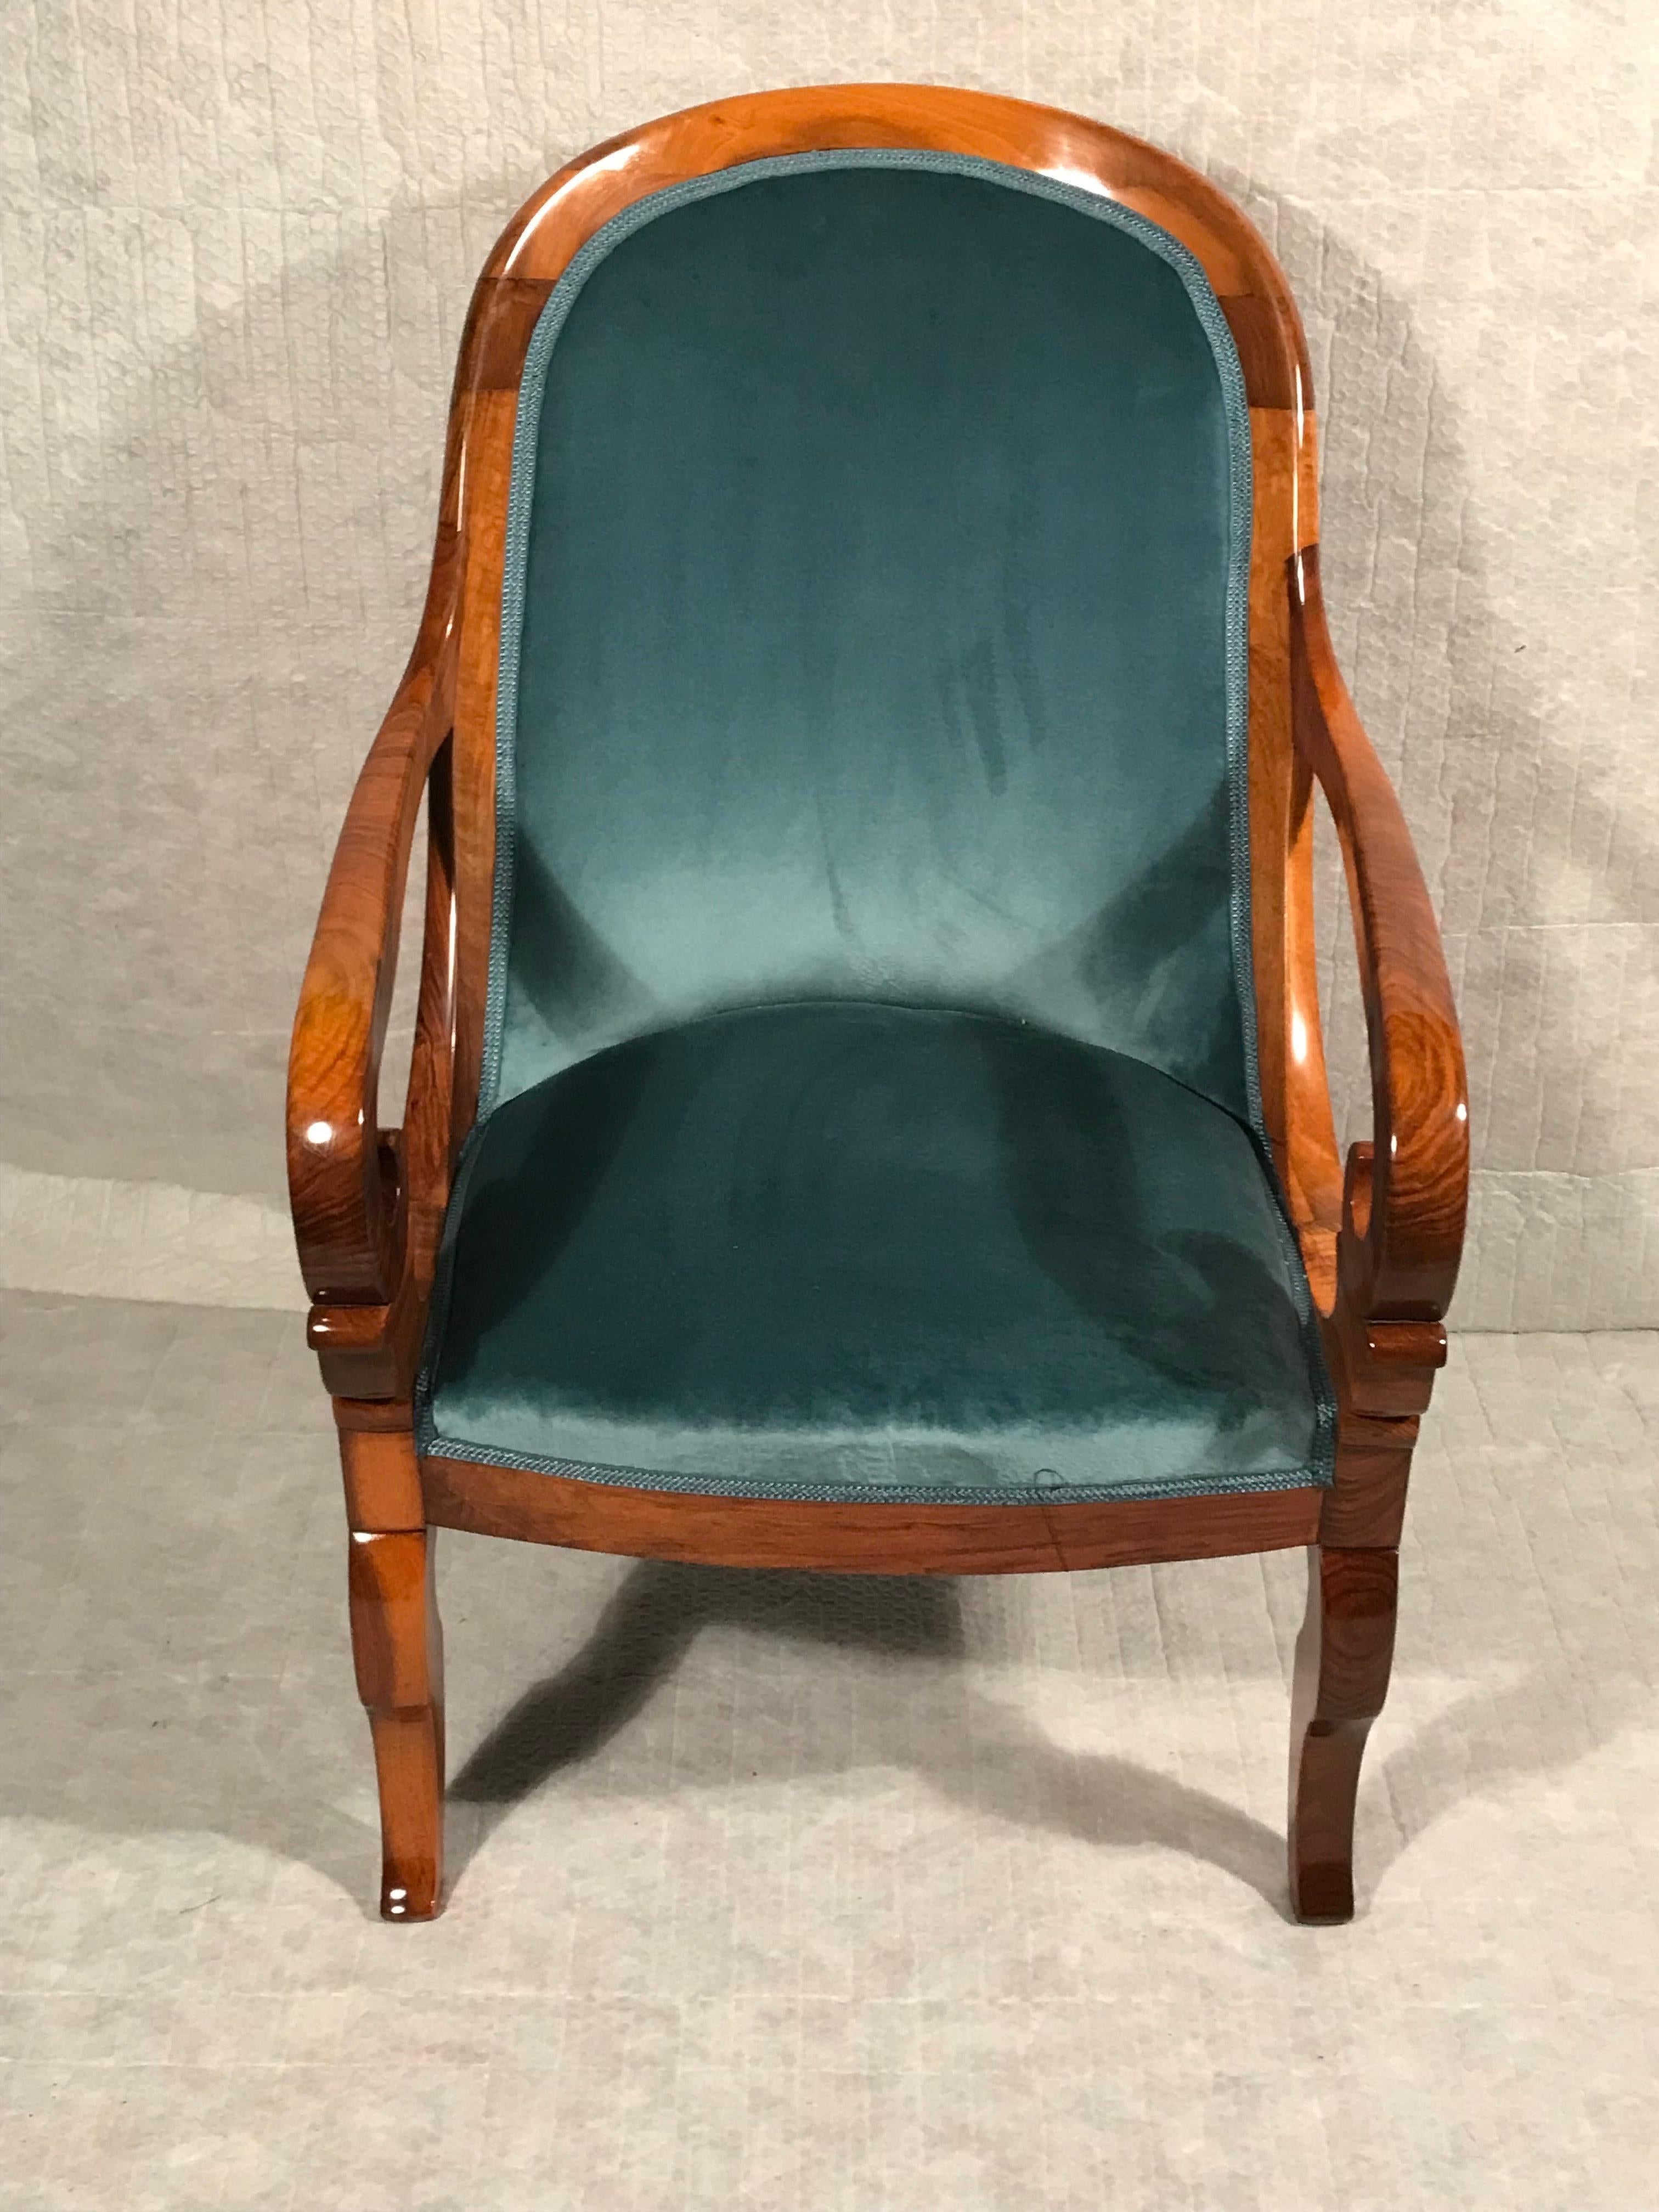 Fauteuil Biedermeier, Allemagne du Sud-Ouest, 1820. 
Ce fauteuil ou bergère Biedermeier original très confortable provient du sud-ouest de l'Allemagne. Il témoigne de l'influence du style Restauration français. 
(1814-30). Le fauteuil est doté